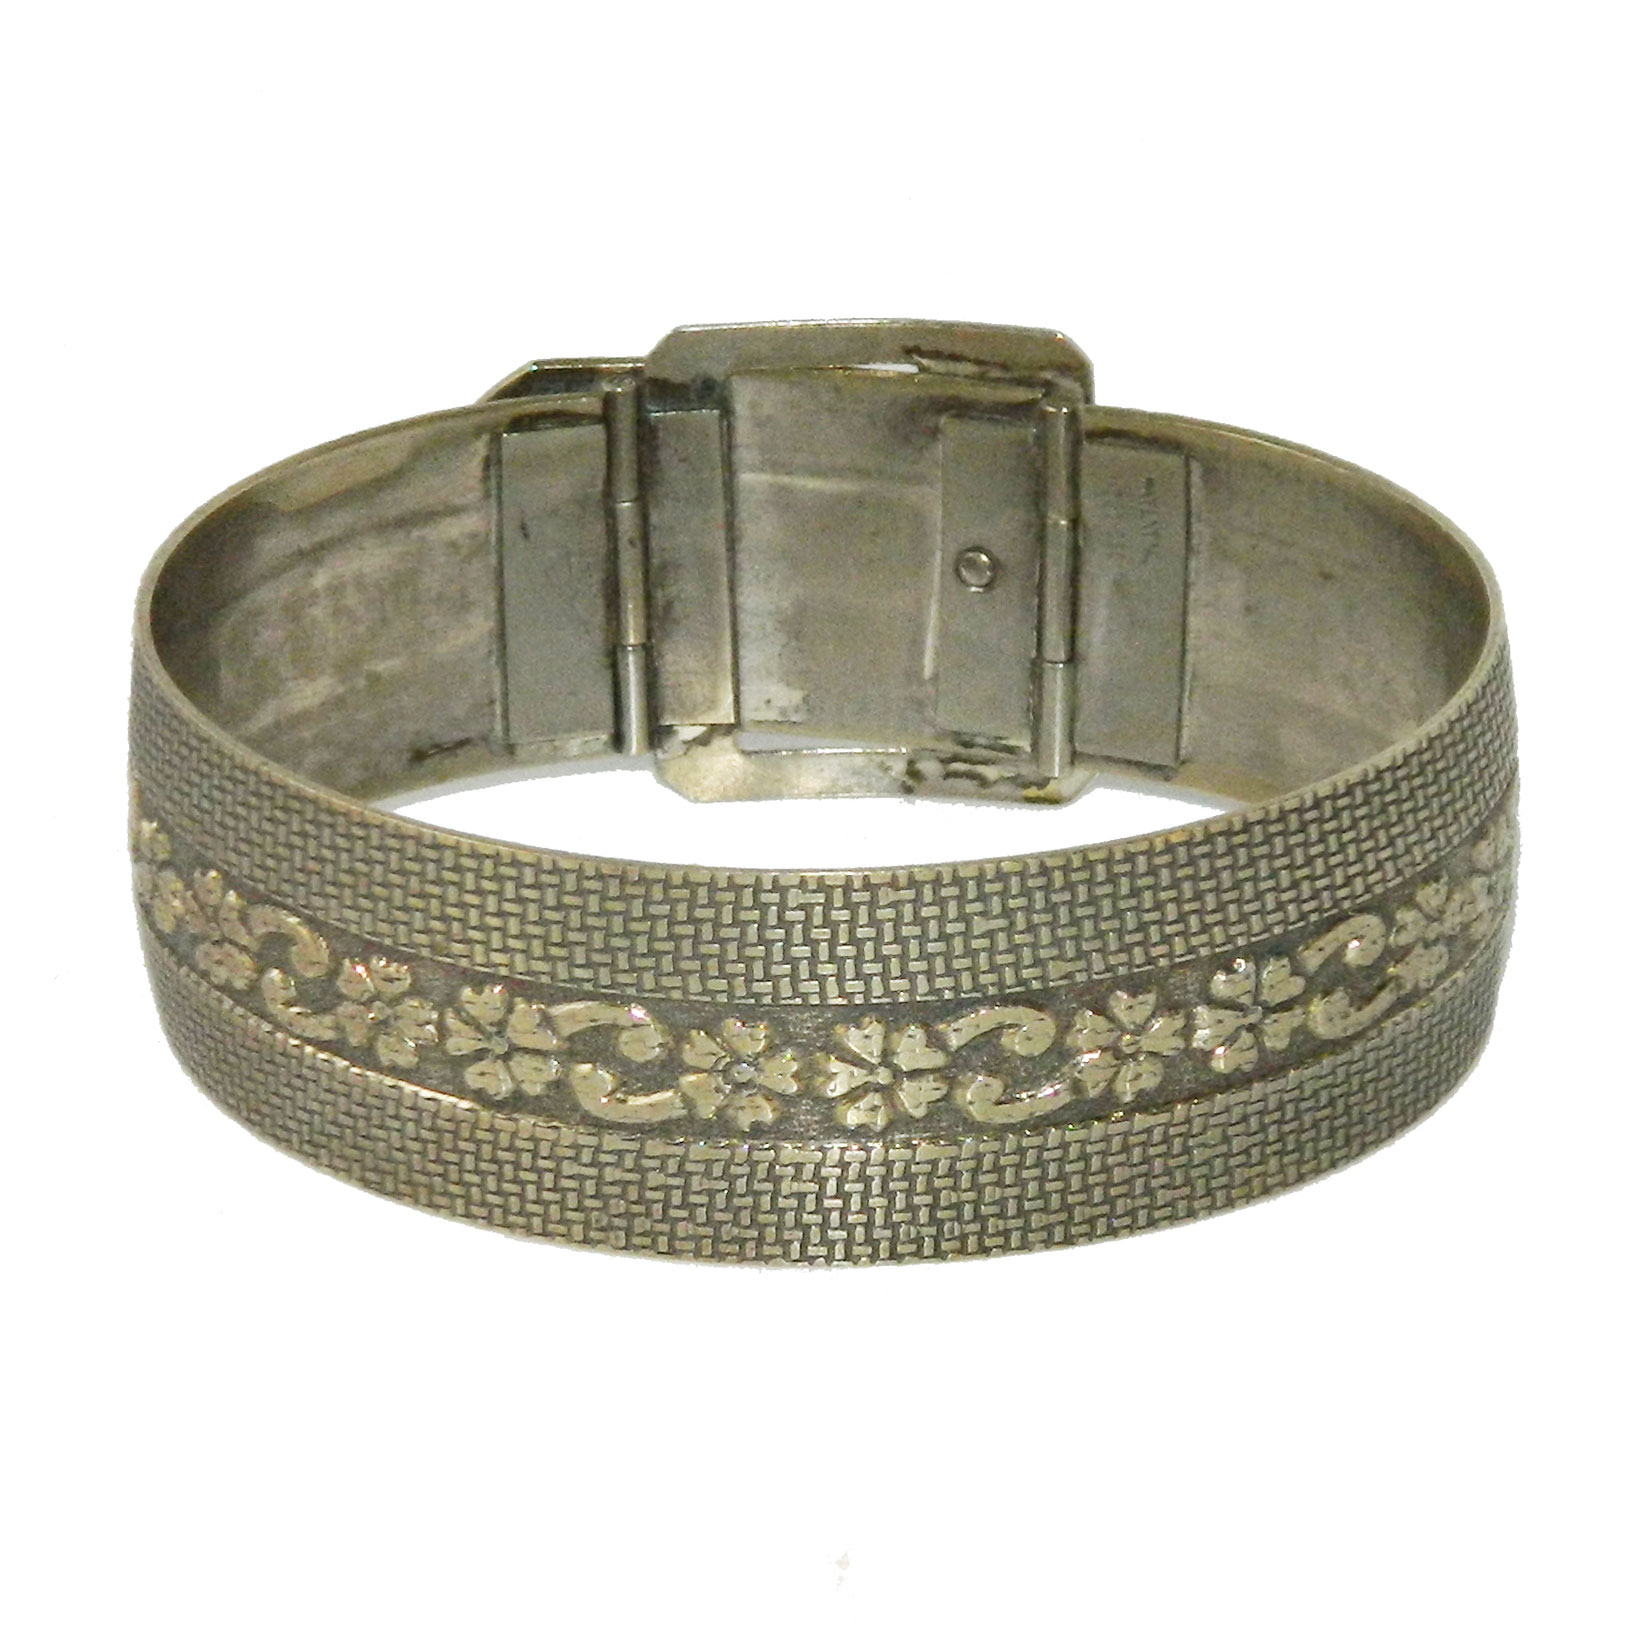 Belt buckle bangle bracelet